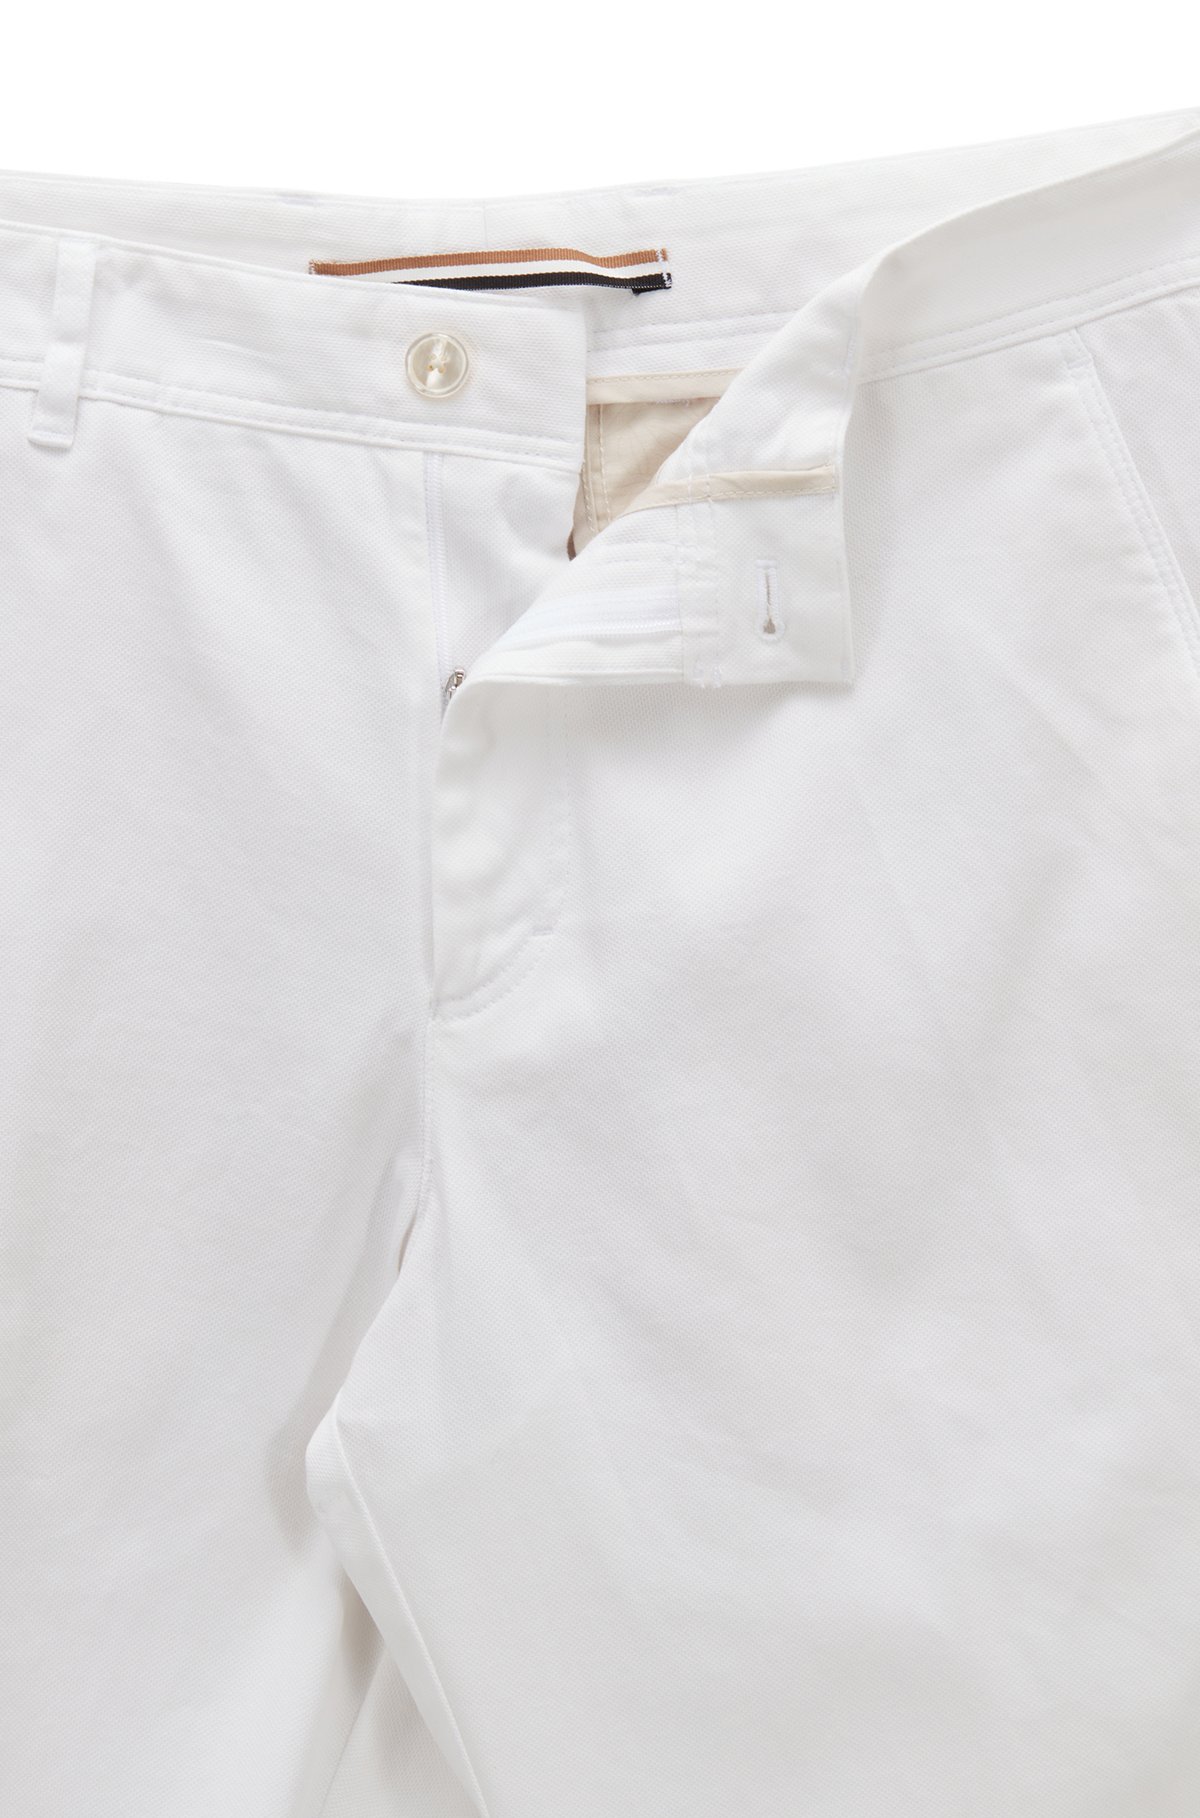 Pantalones tapered fit en algodón elástico microestampado, Blanco